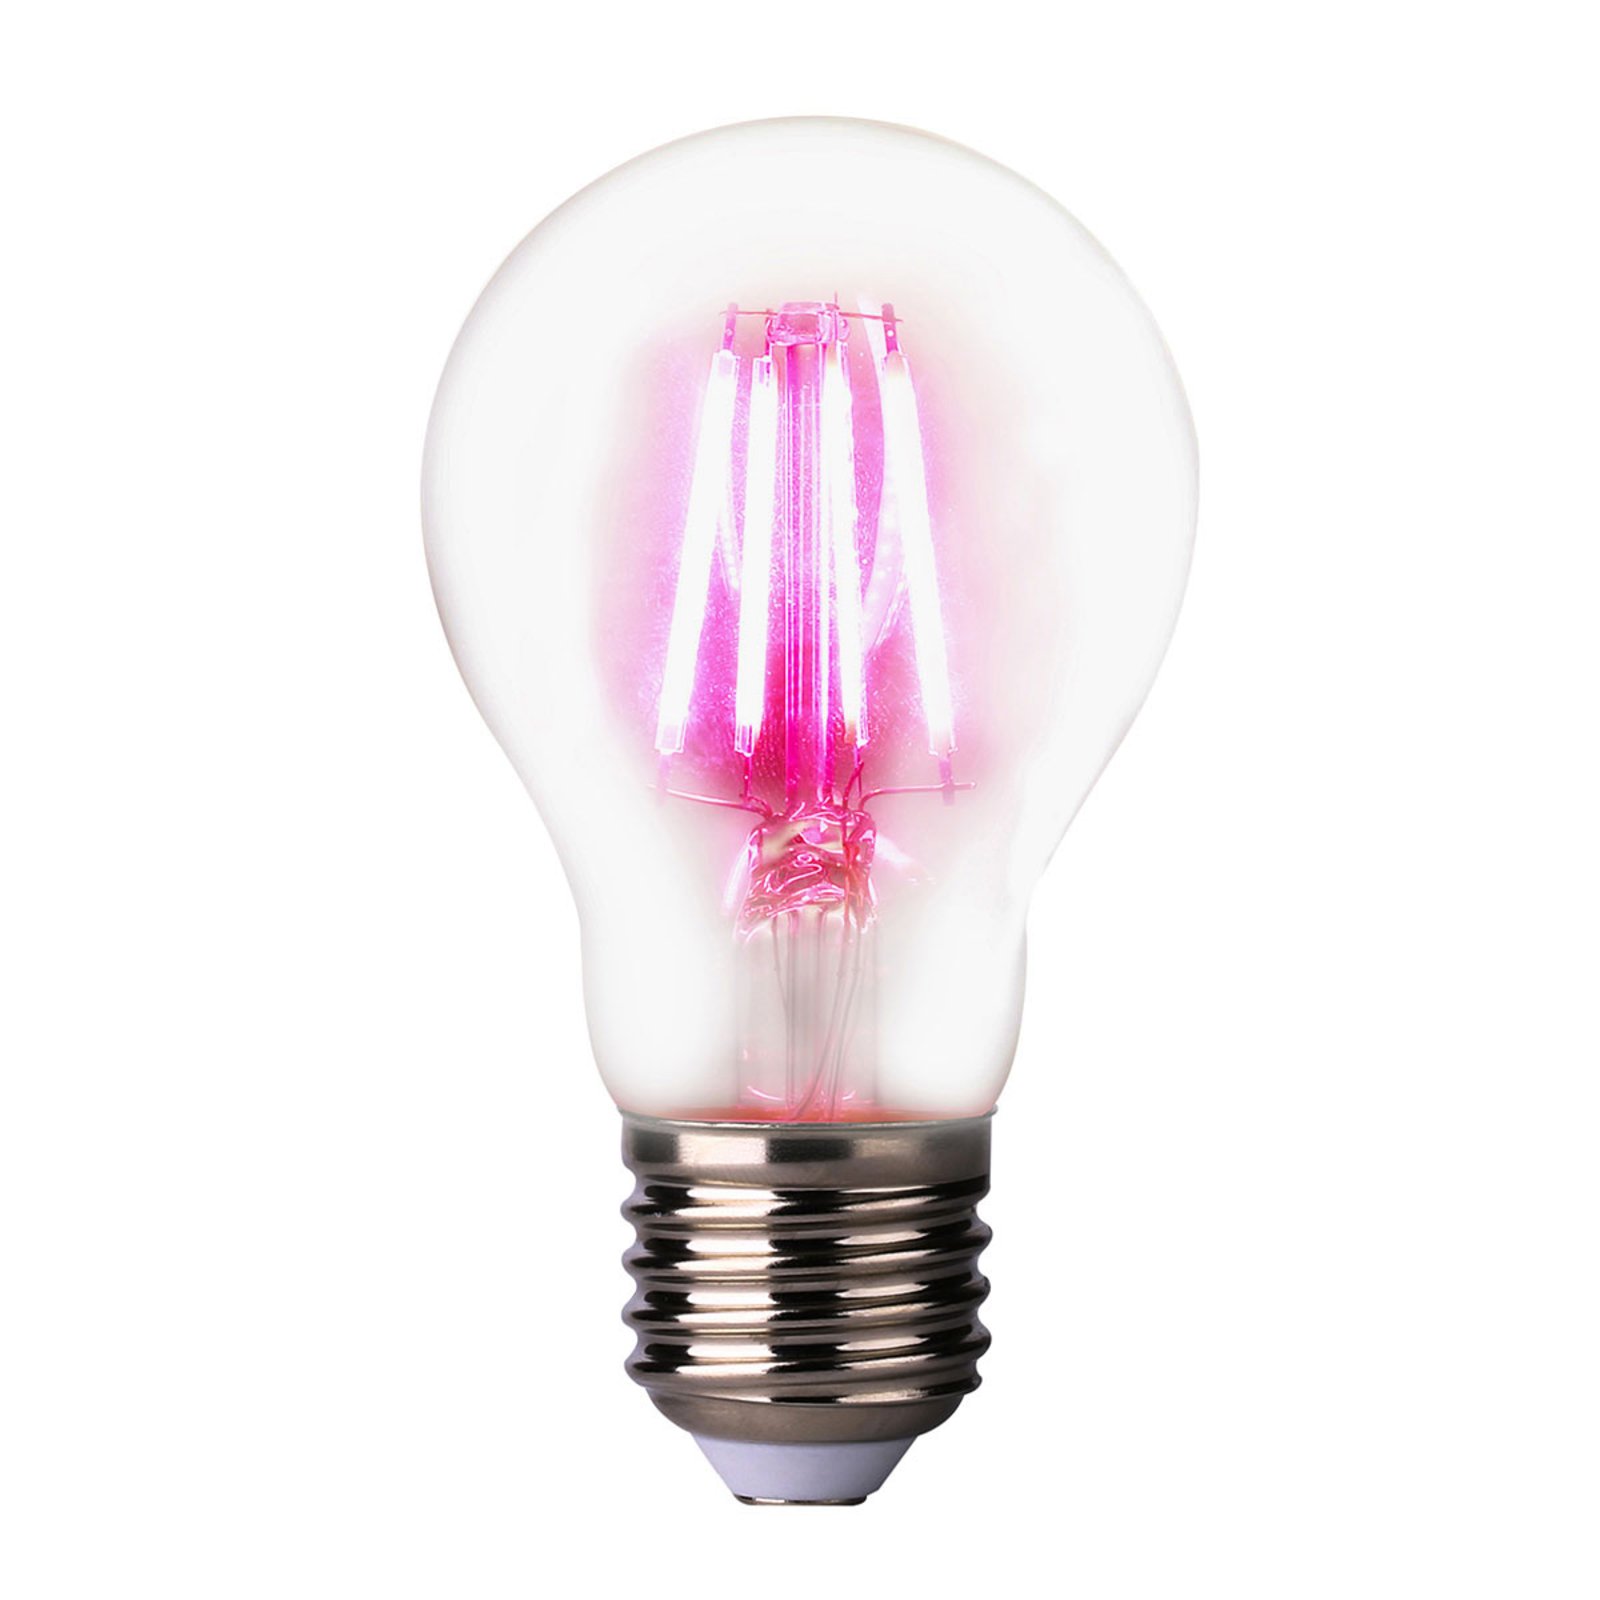 Grow light LED bulb E27 4 W, 360° beam angle